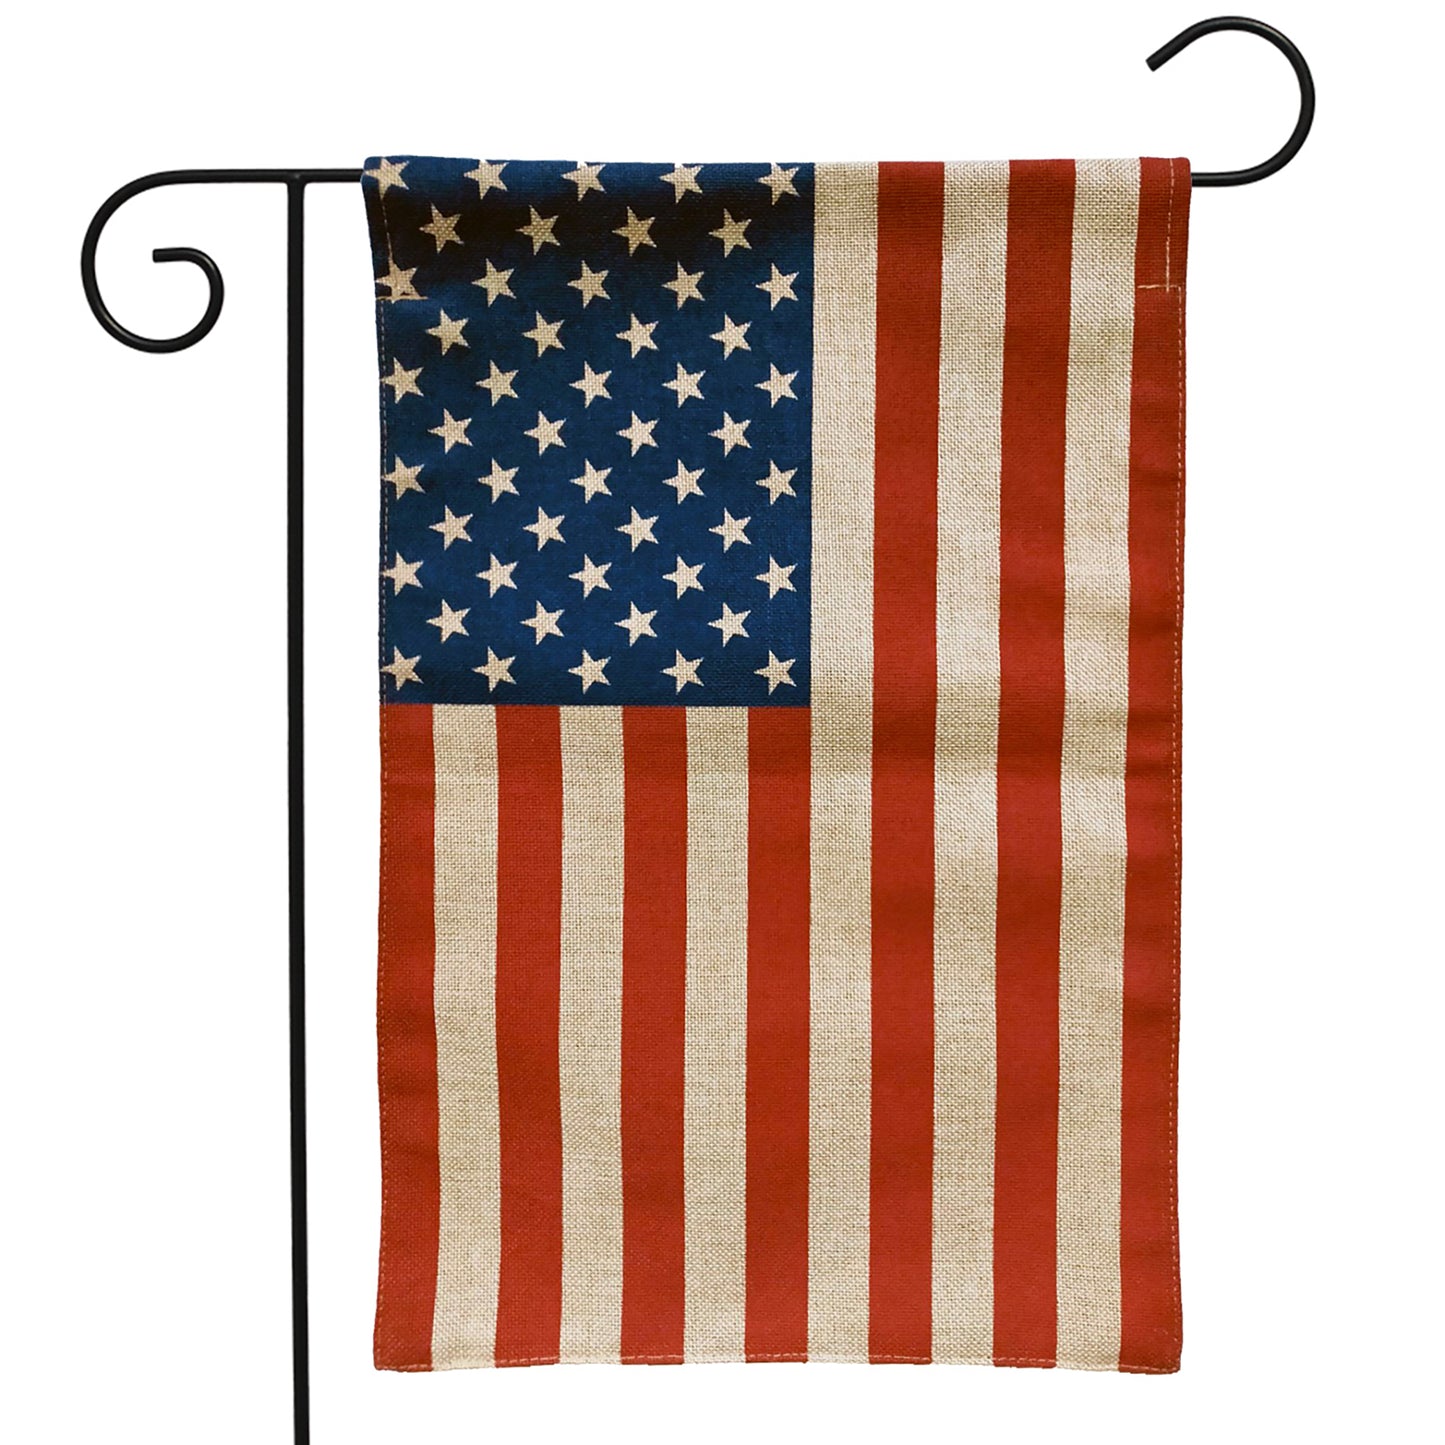 AMERICAN BURLAP GARDEN FLAG